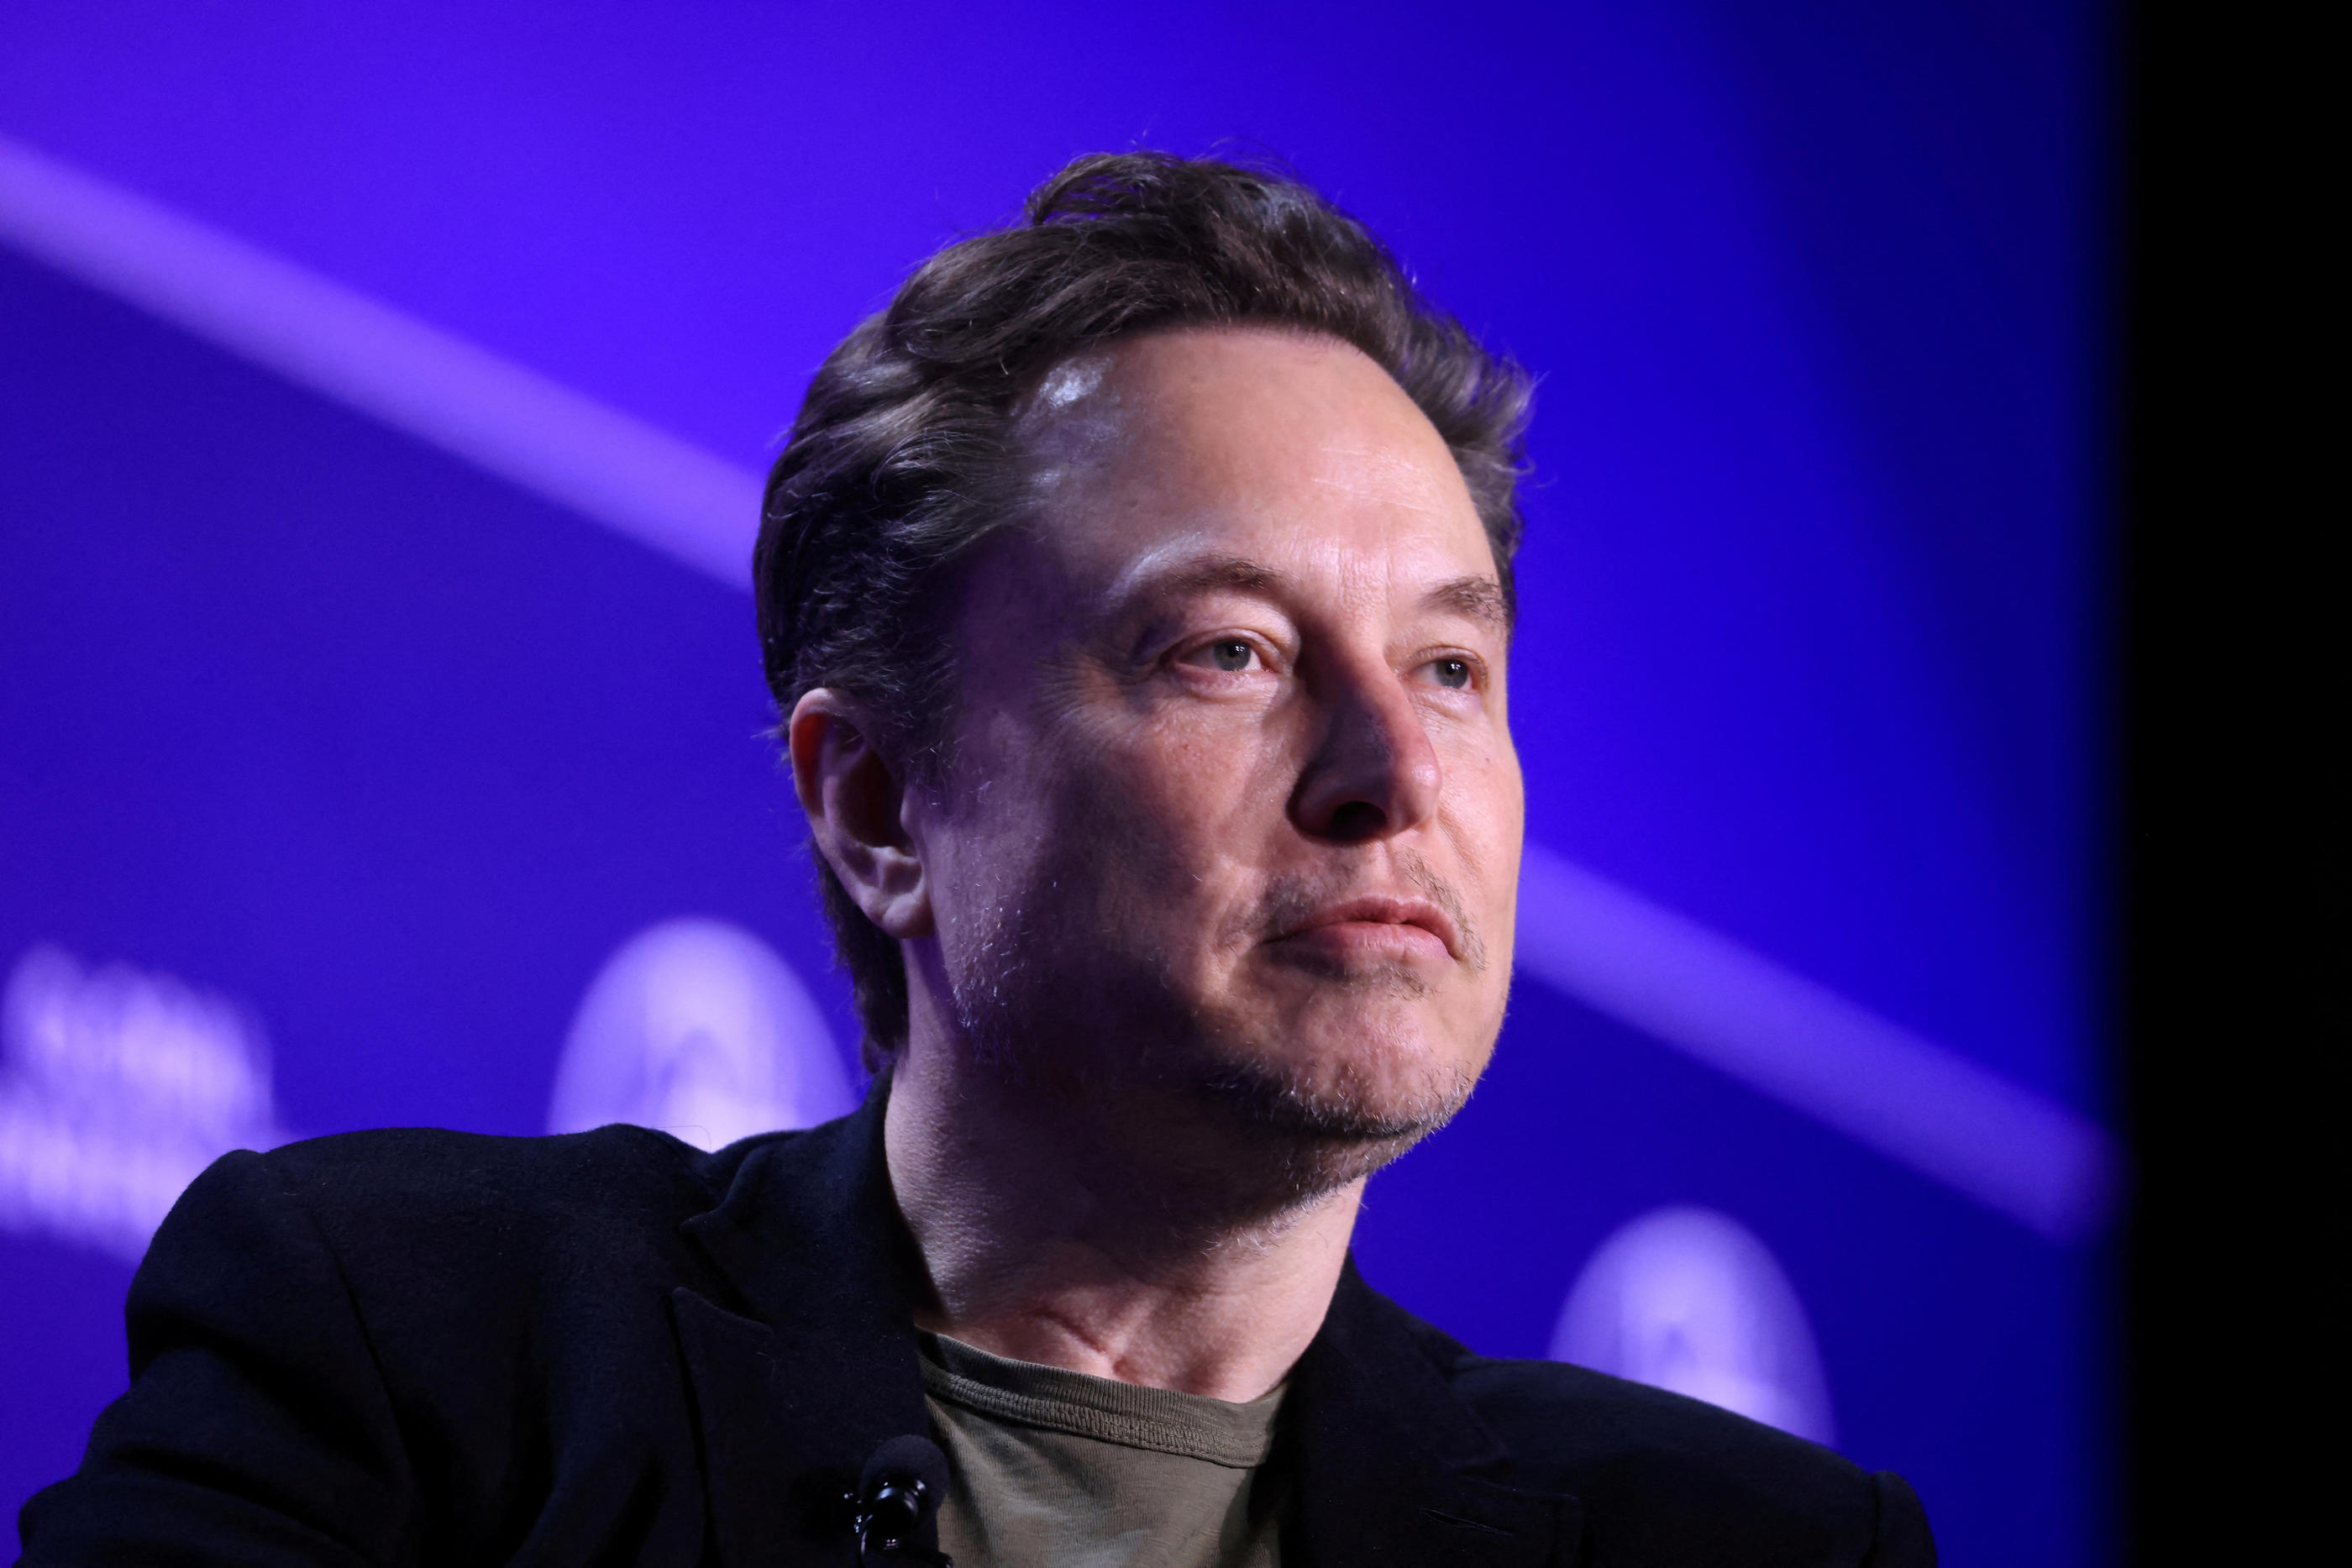 Développé par la start-up d’Elon Musk xAI, Grok a accès en temps réel aux infos via X, anciennement Twitter. Reuters/David Swanson